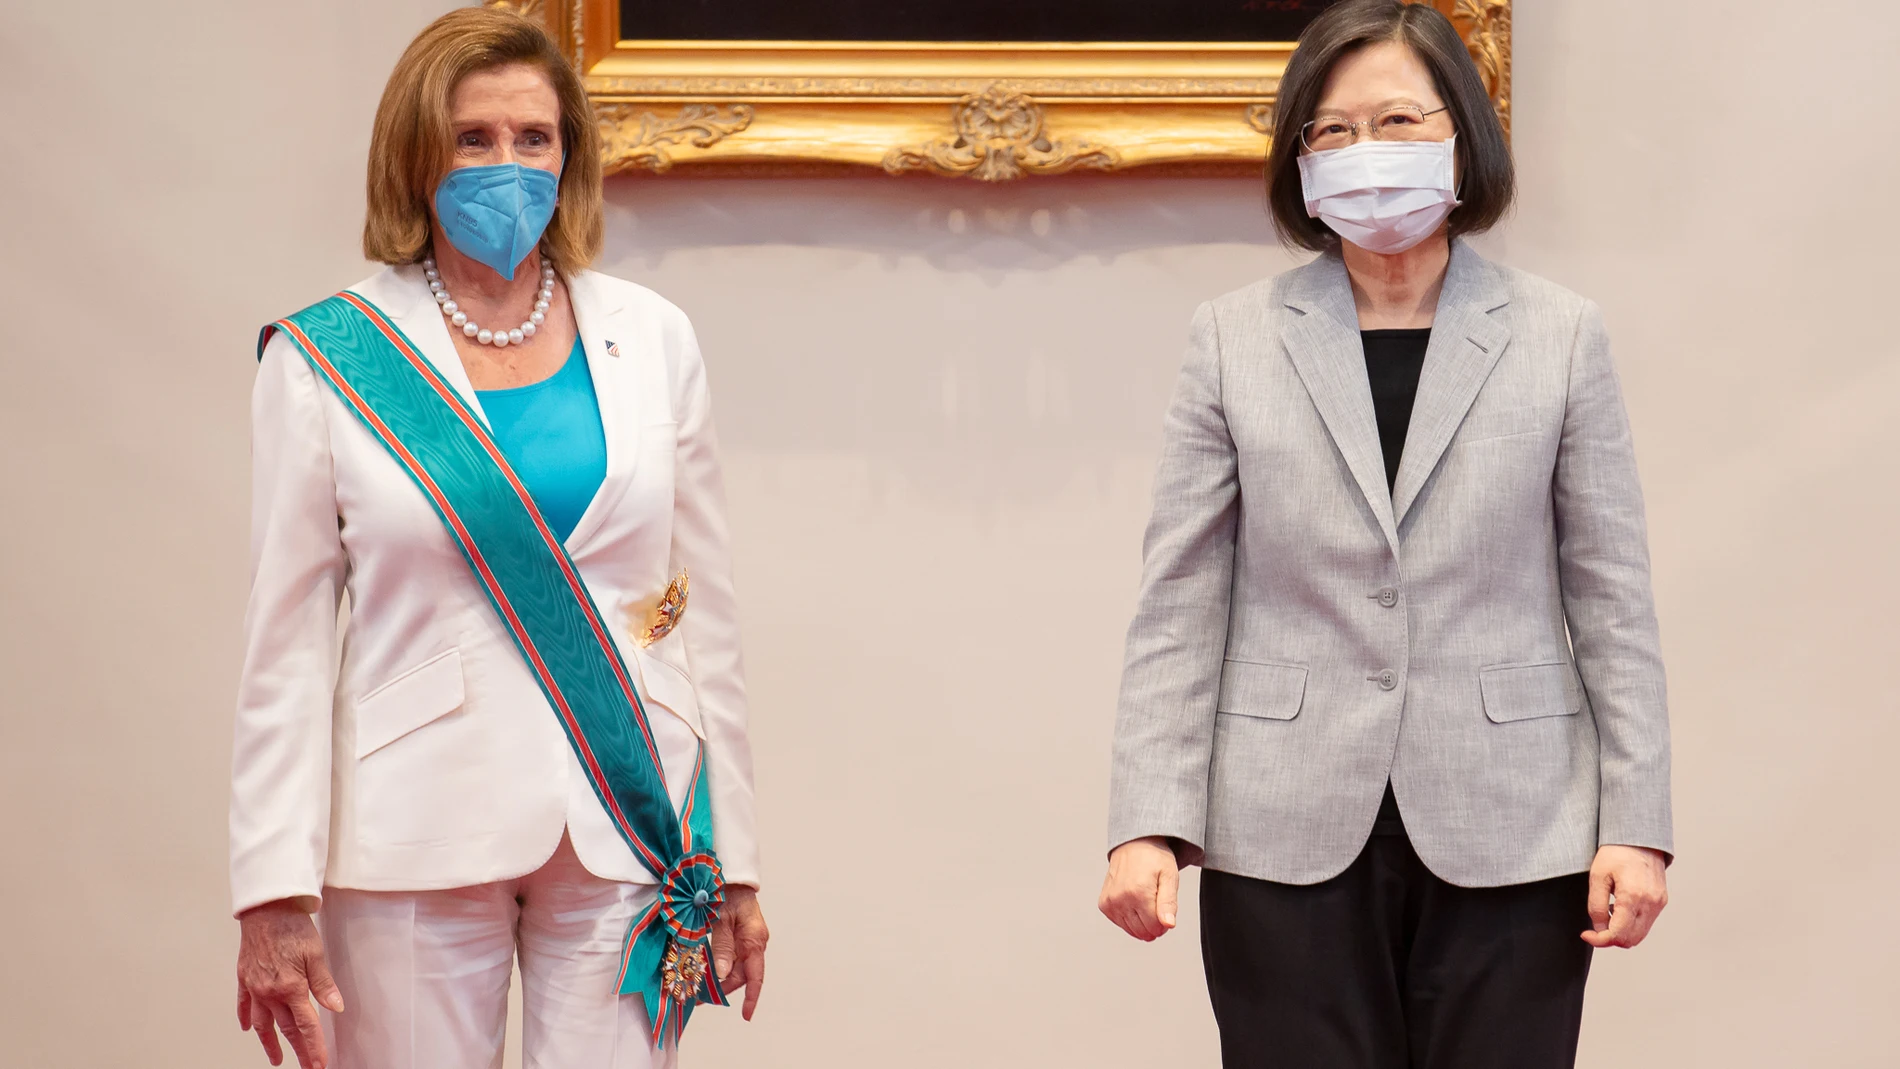 La presidenta de la Cámara de Representantes de Estados Unidos, Nancy Pelosi, y la presidenta de Taiwán, Tsai Ing-wen